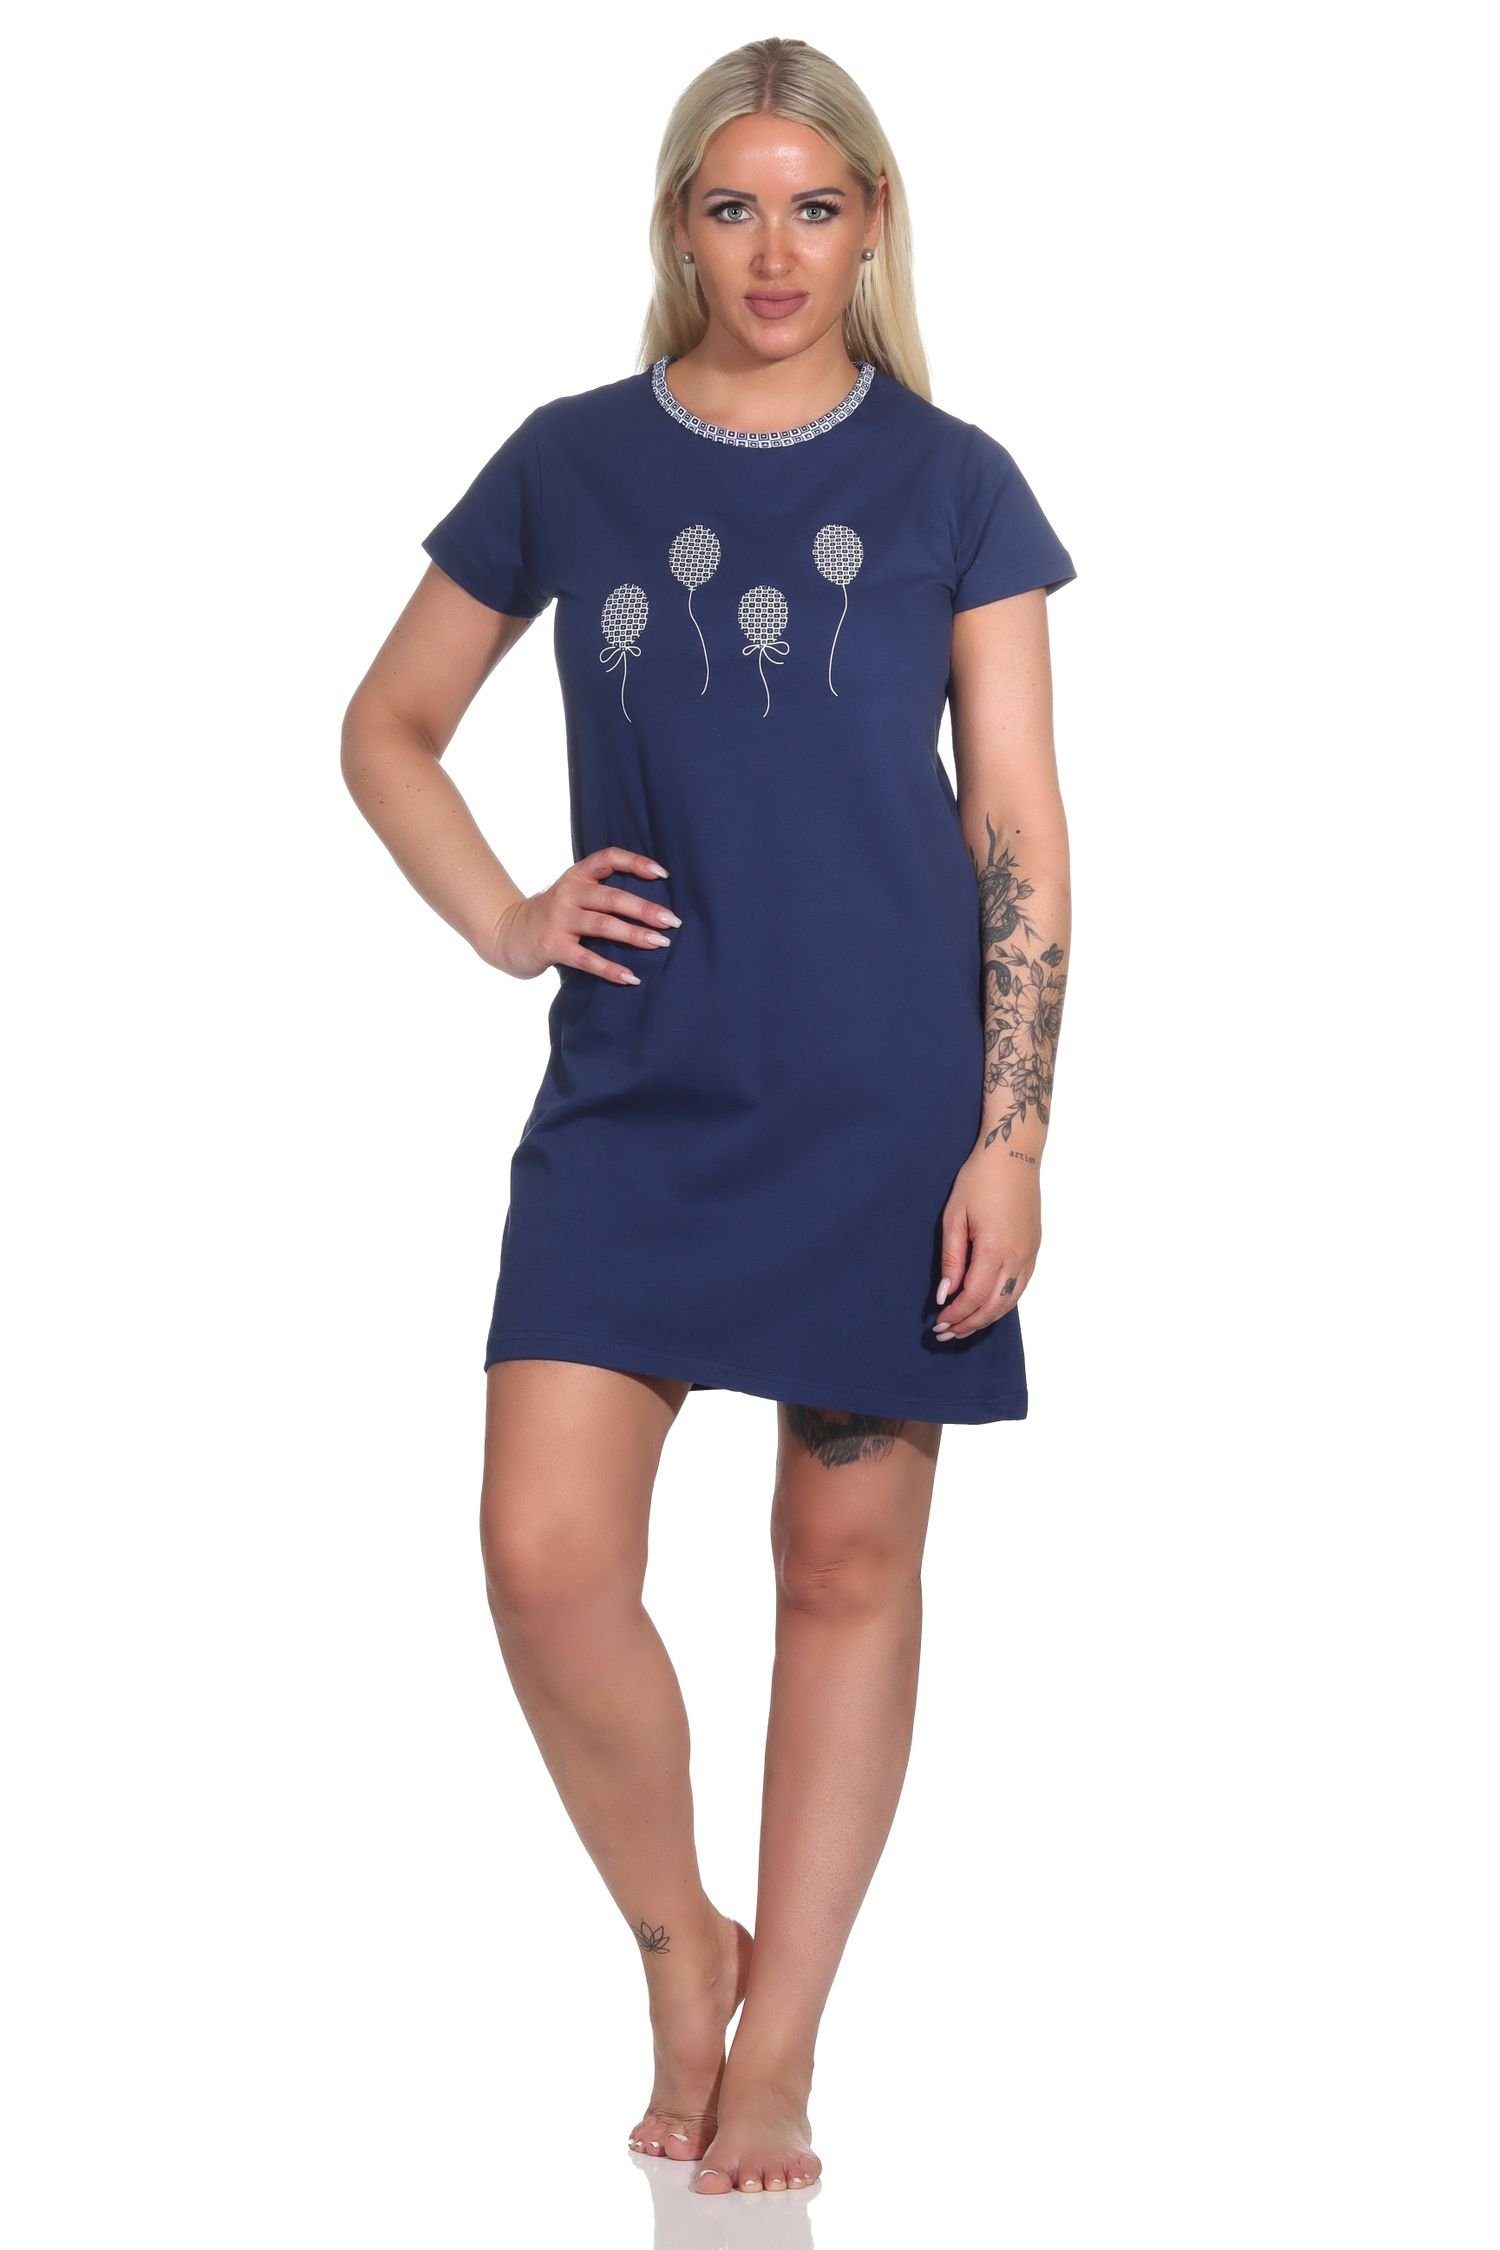 Normann Nachthemd Süßes Damen Nachthemd und kurzen Ärmeln marine Luftballon-Print mit